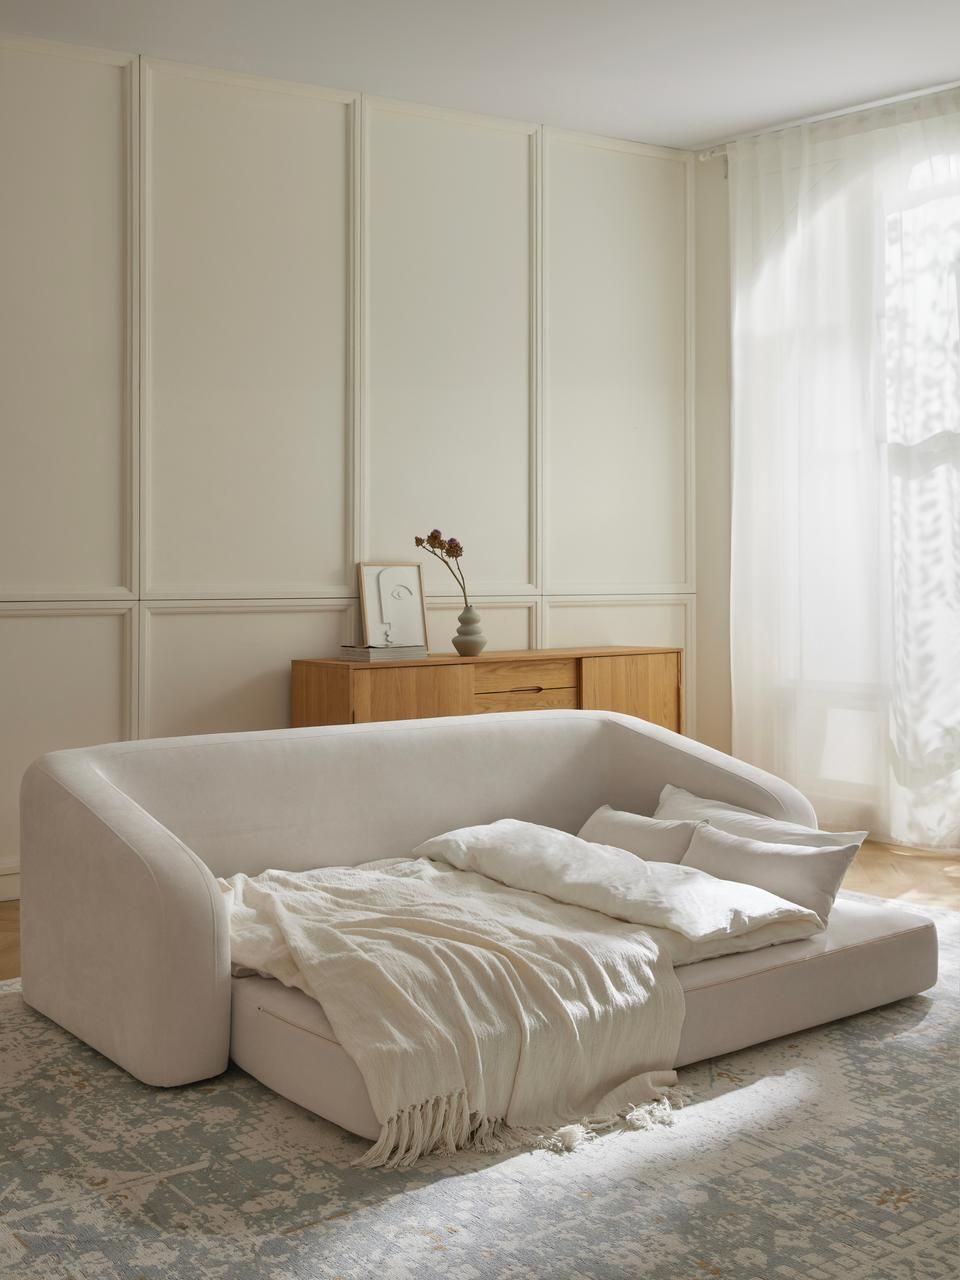 The Versatile Design of Convertible Sofas